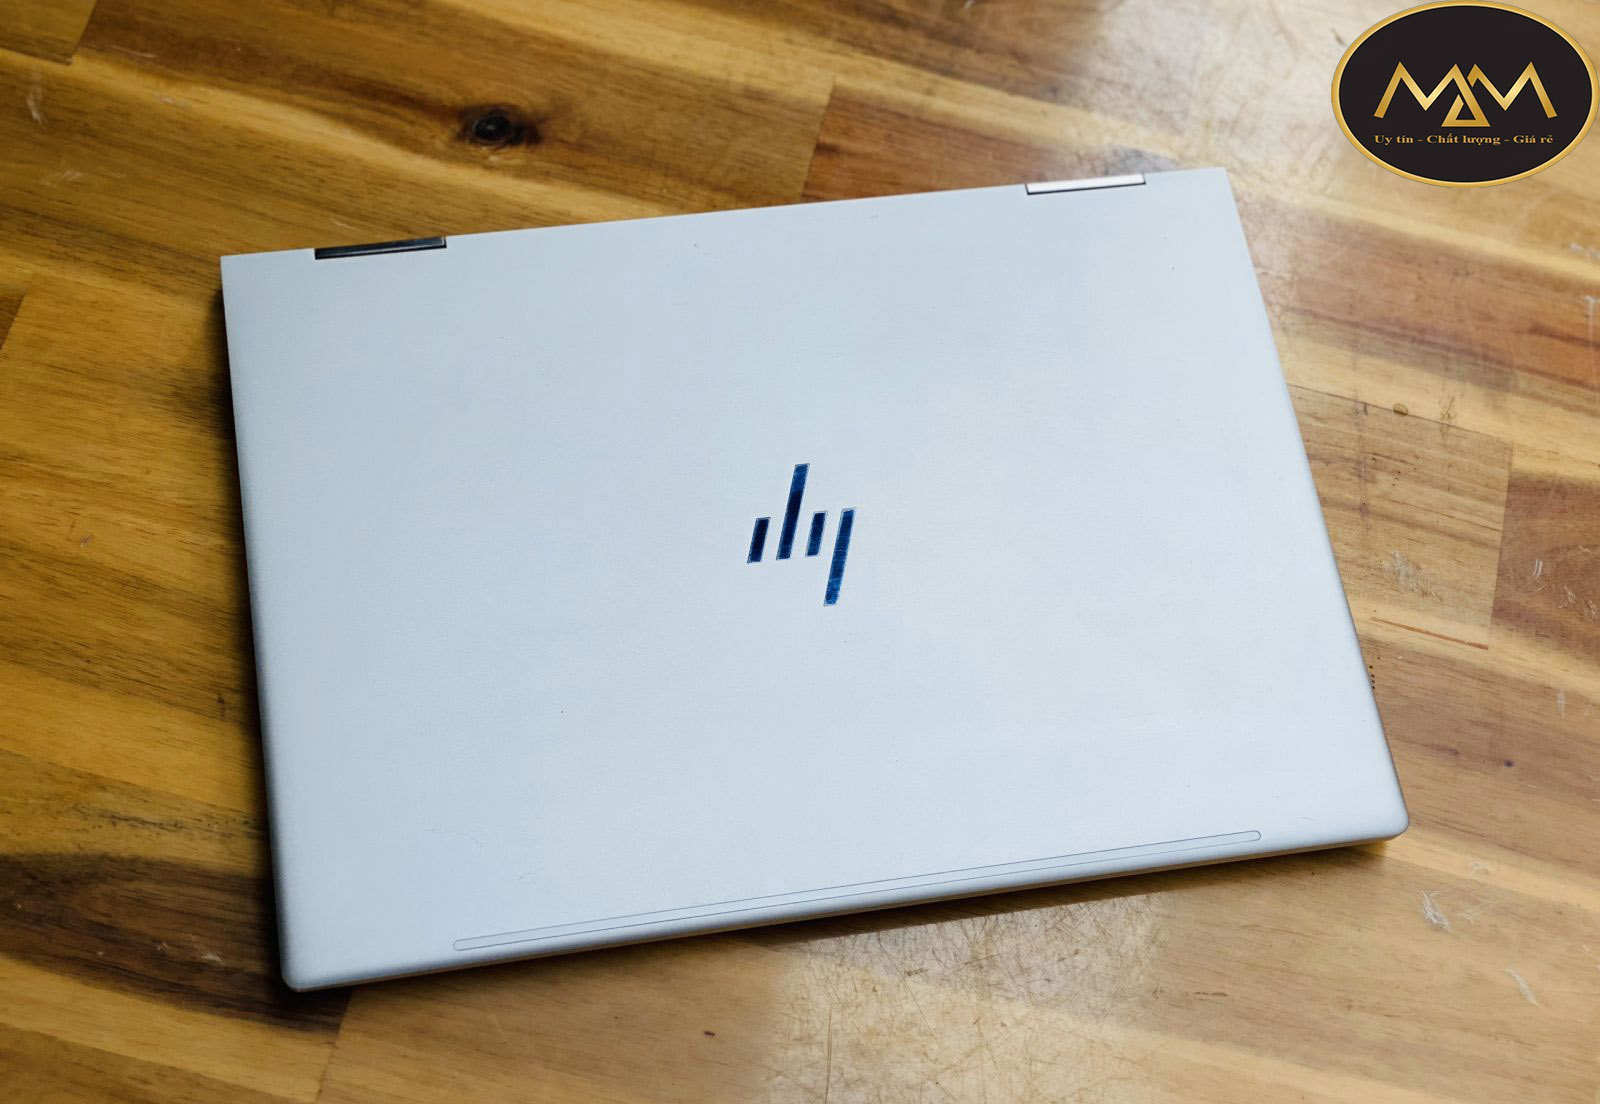 Laptop-HP-i7-cũ-giá-rẻ-TPHCM-chất-lượng